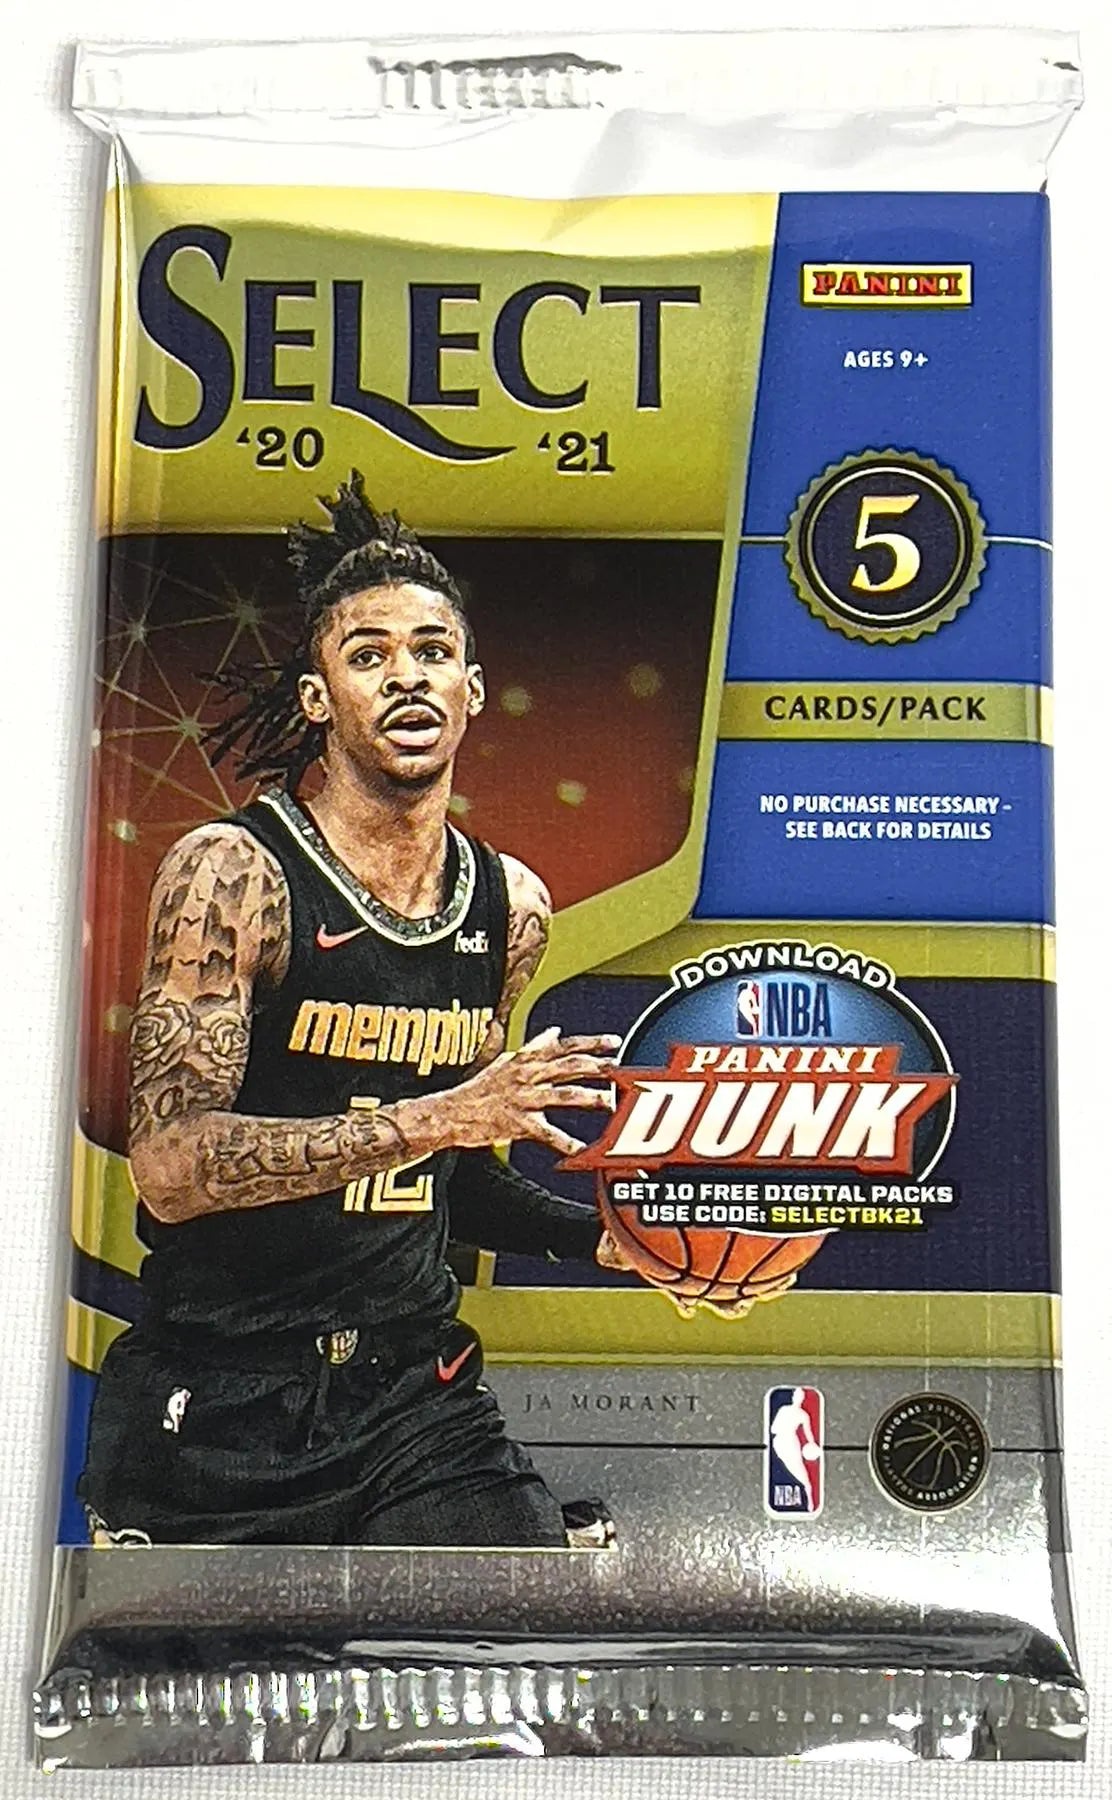 2020/21 Panini Select Basketball Hobby Pack